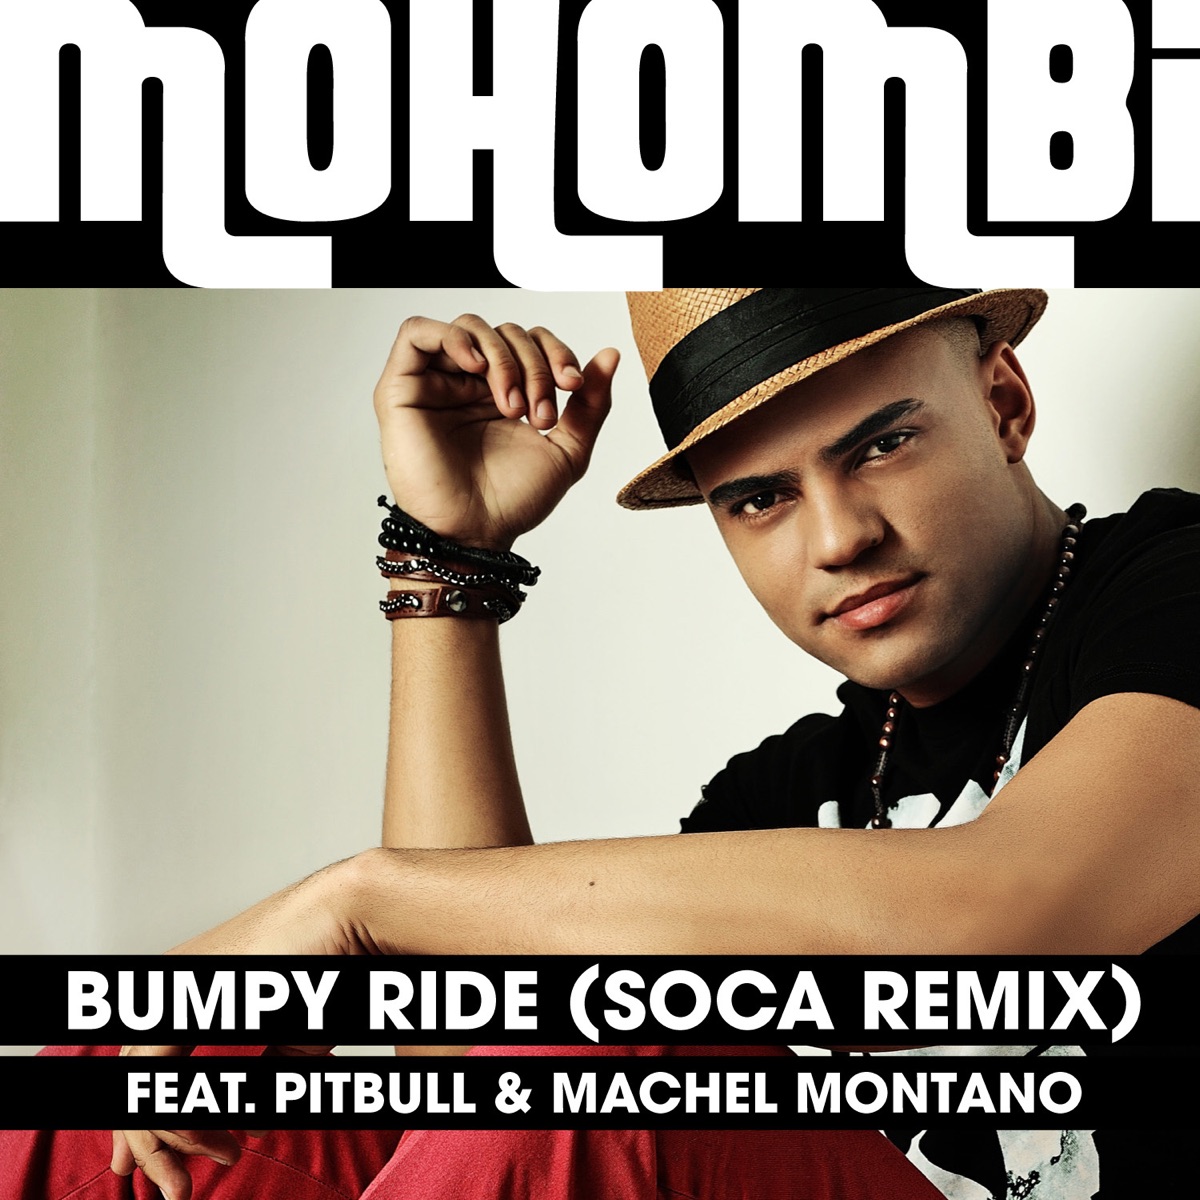 Bumpy Ride (Soca Remix) [feat. Pitbull & Machel Montano] - Single by  Mohombi on Apple Music